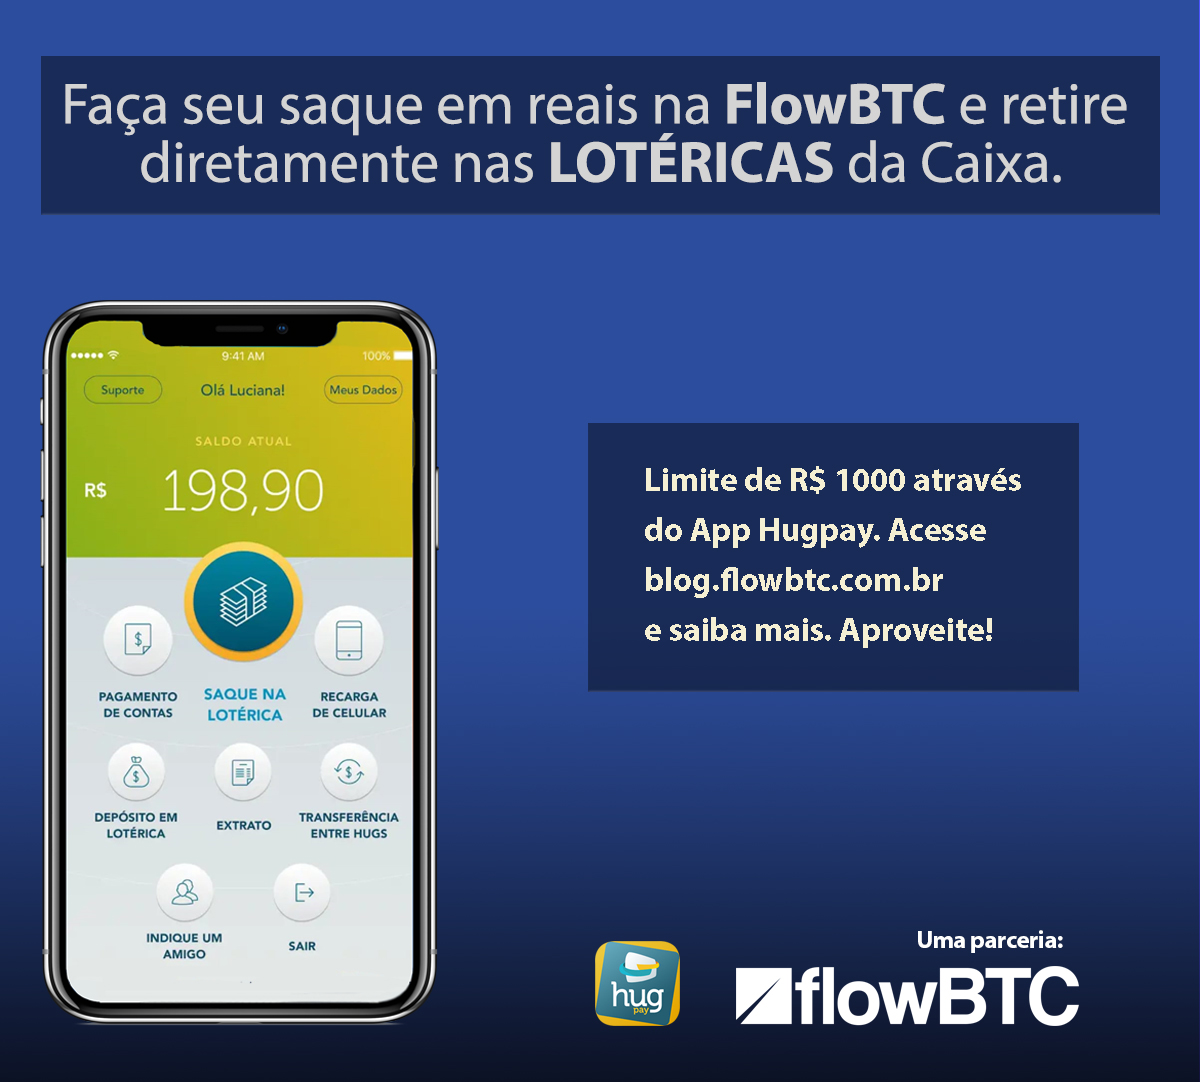 FlowBTC implementa retirada de reais nas Lotéricas da Caixa através de parceria com App